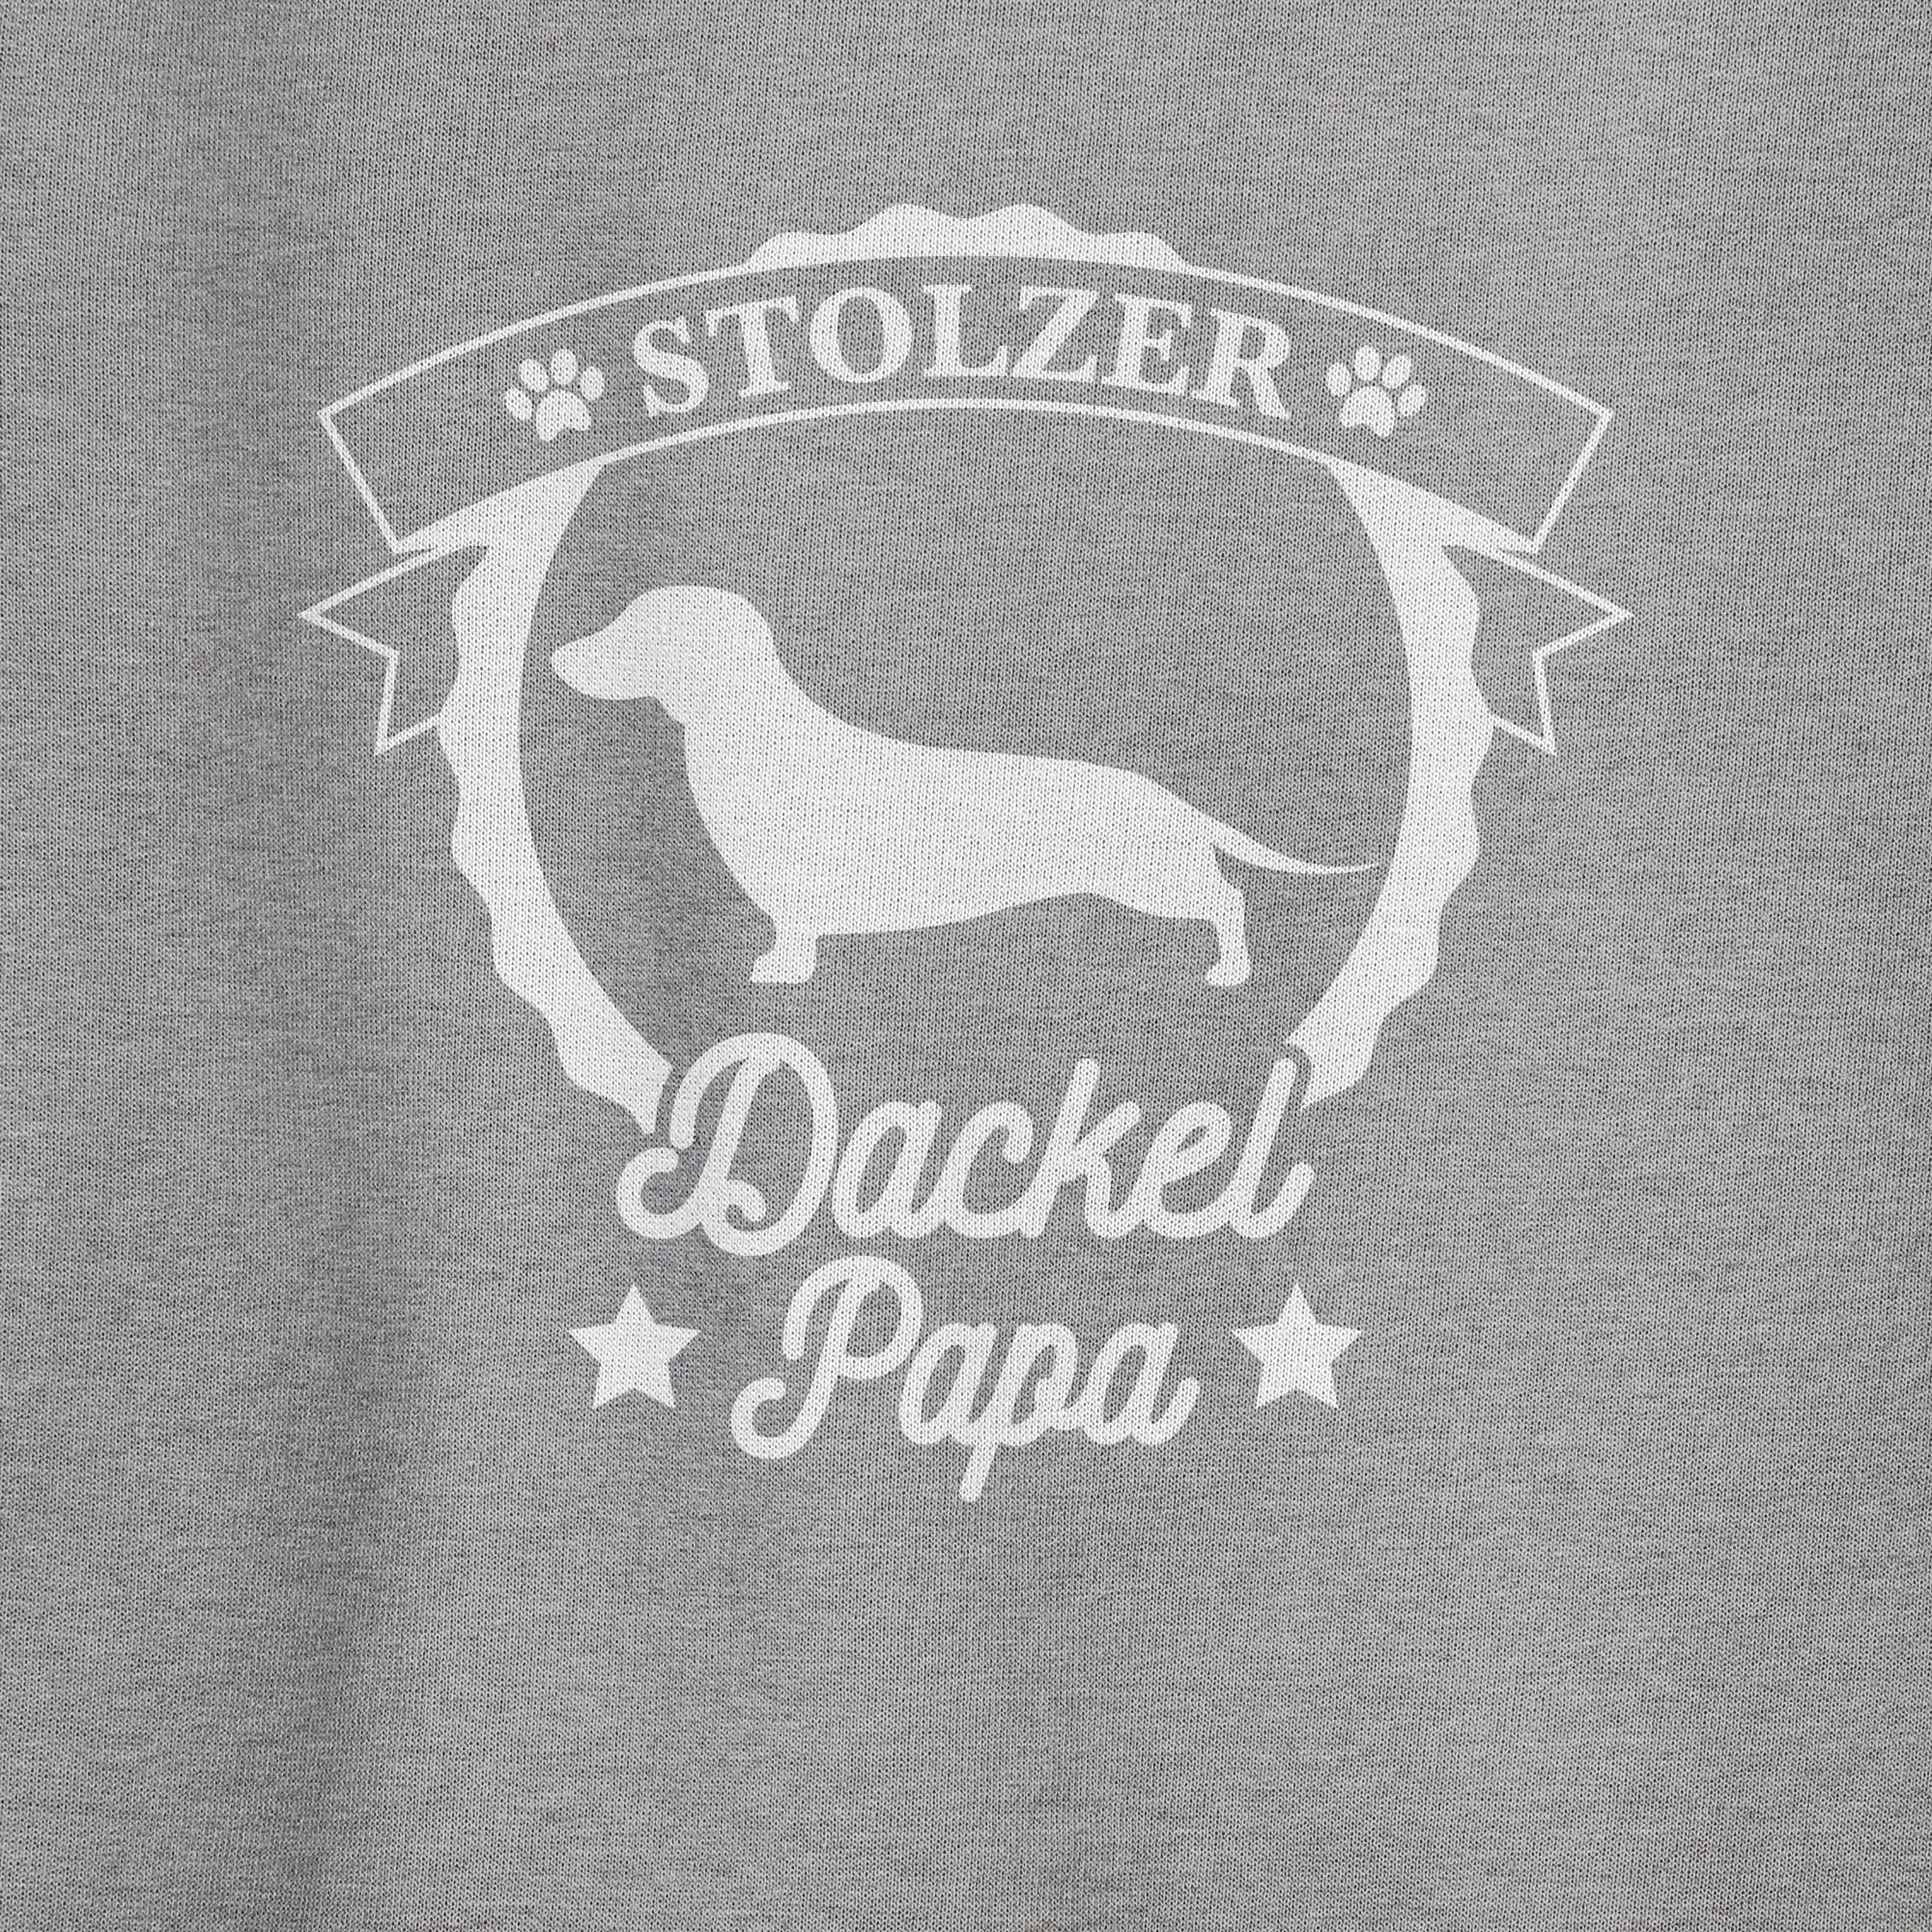 Shirtracer Sweatshirt Stolzer Dackel Papa für Grau Hundebesitzer (1-tlg) 1 meliert Geschenk